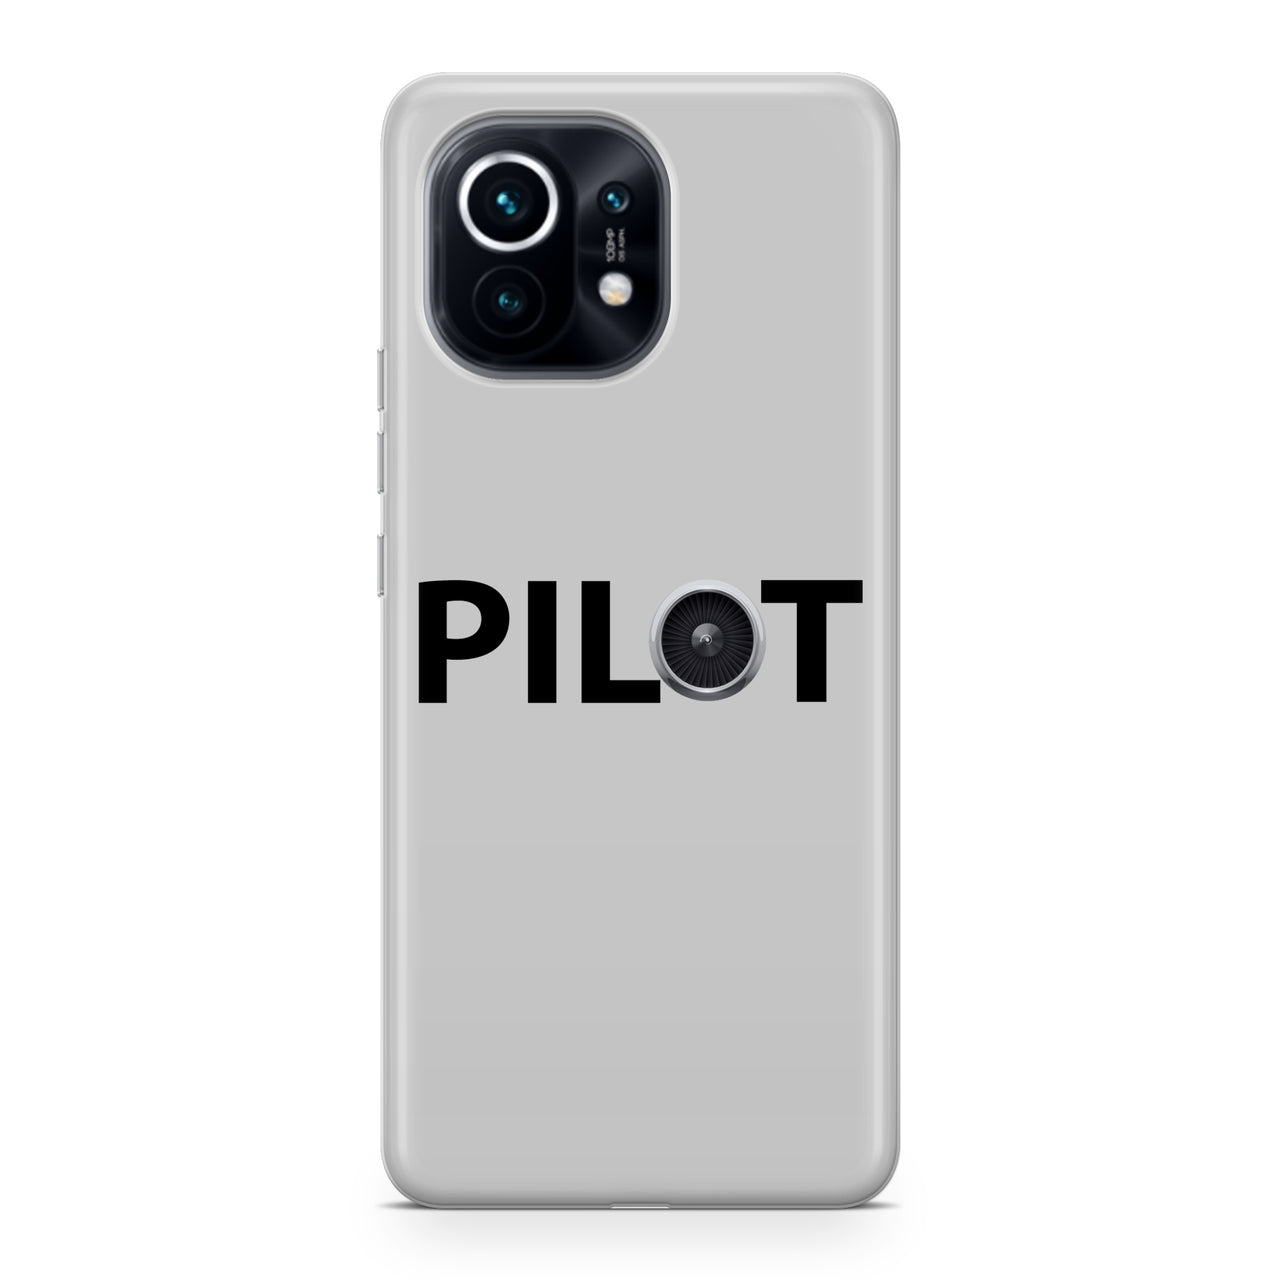 Pilot & Jet Engine Designed Xiaomi Cases